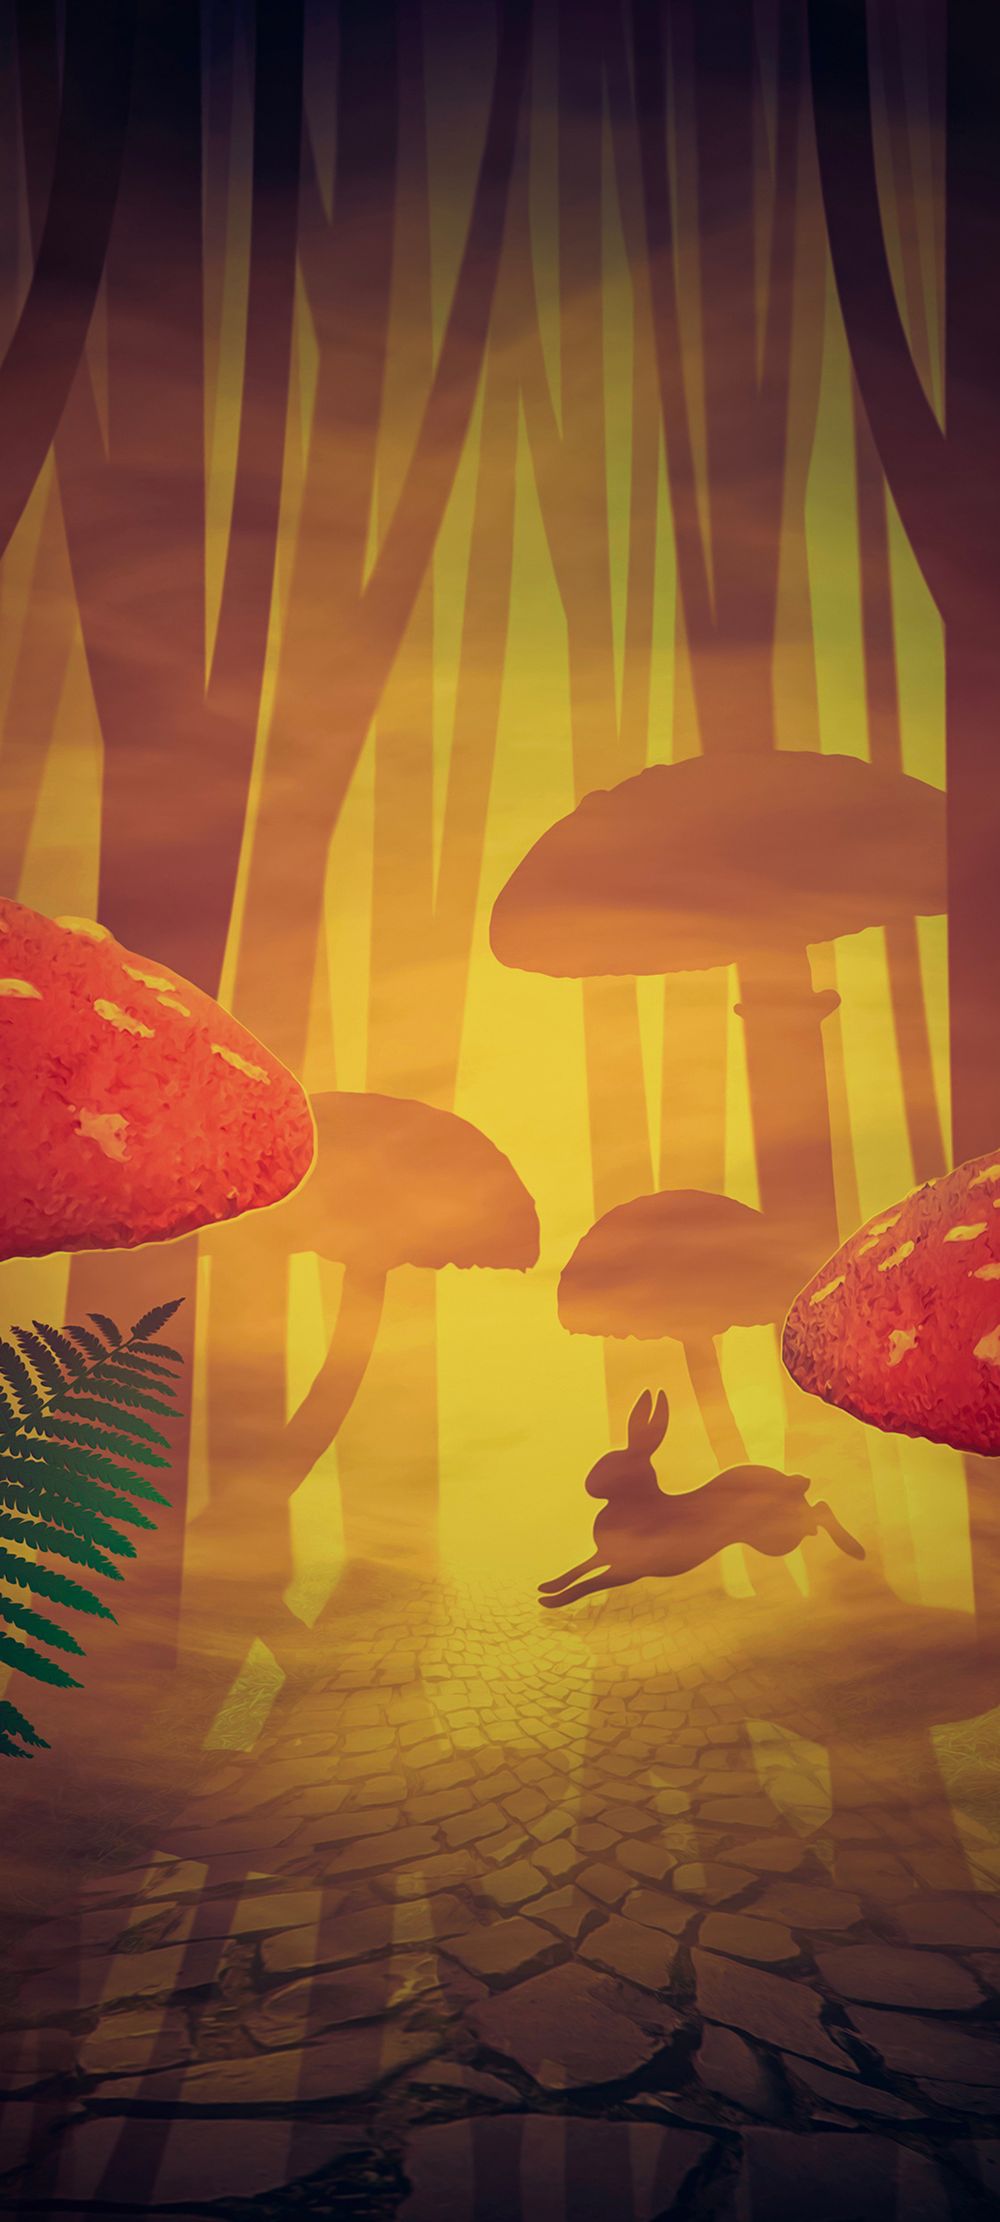 森林与蘑菇风光里奔跑的小鹿动漫风格手机壁纸